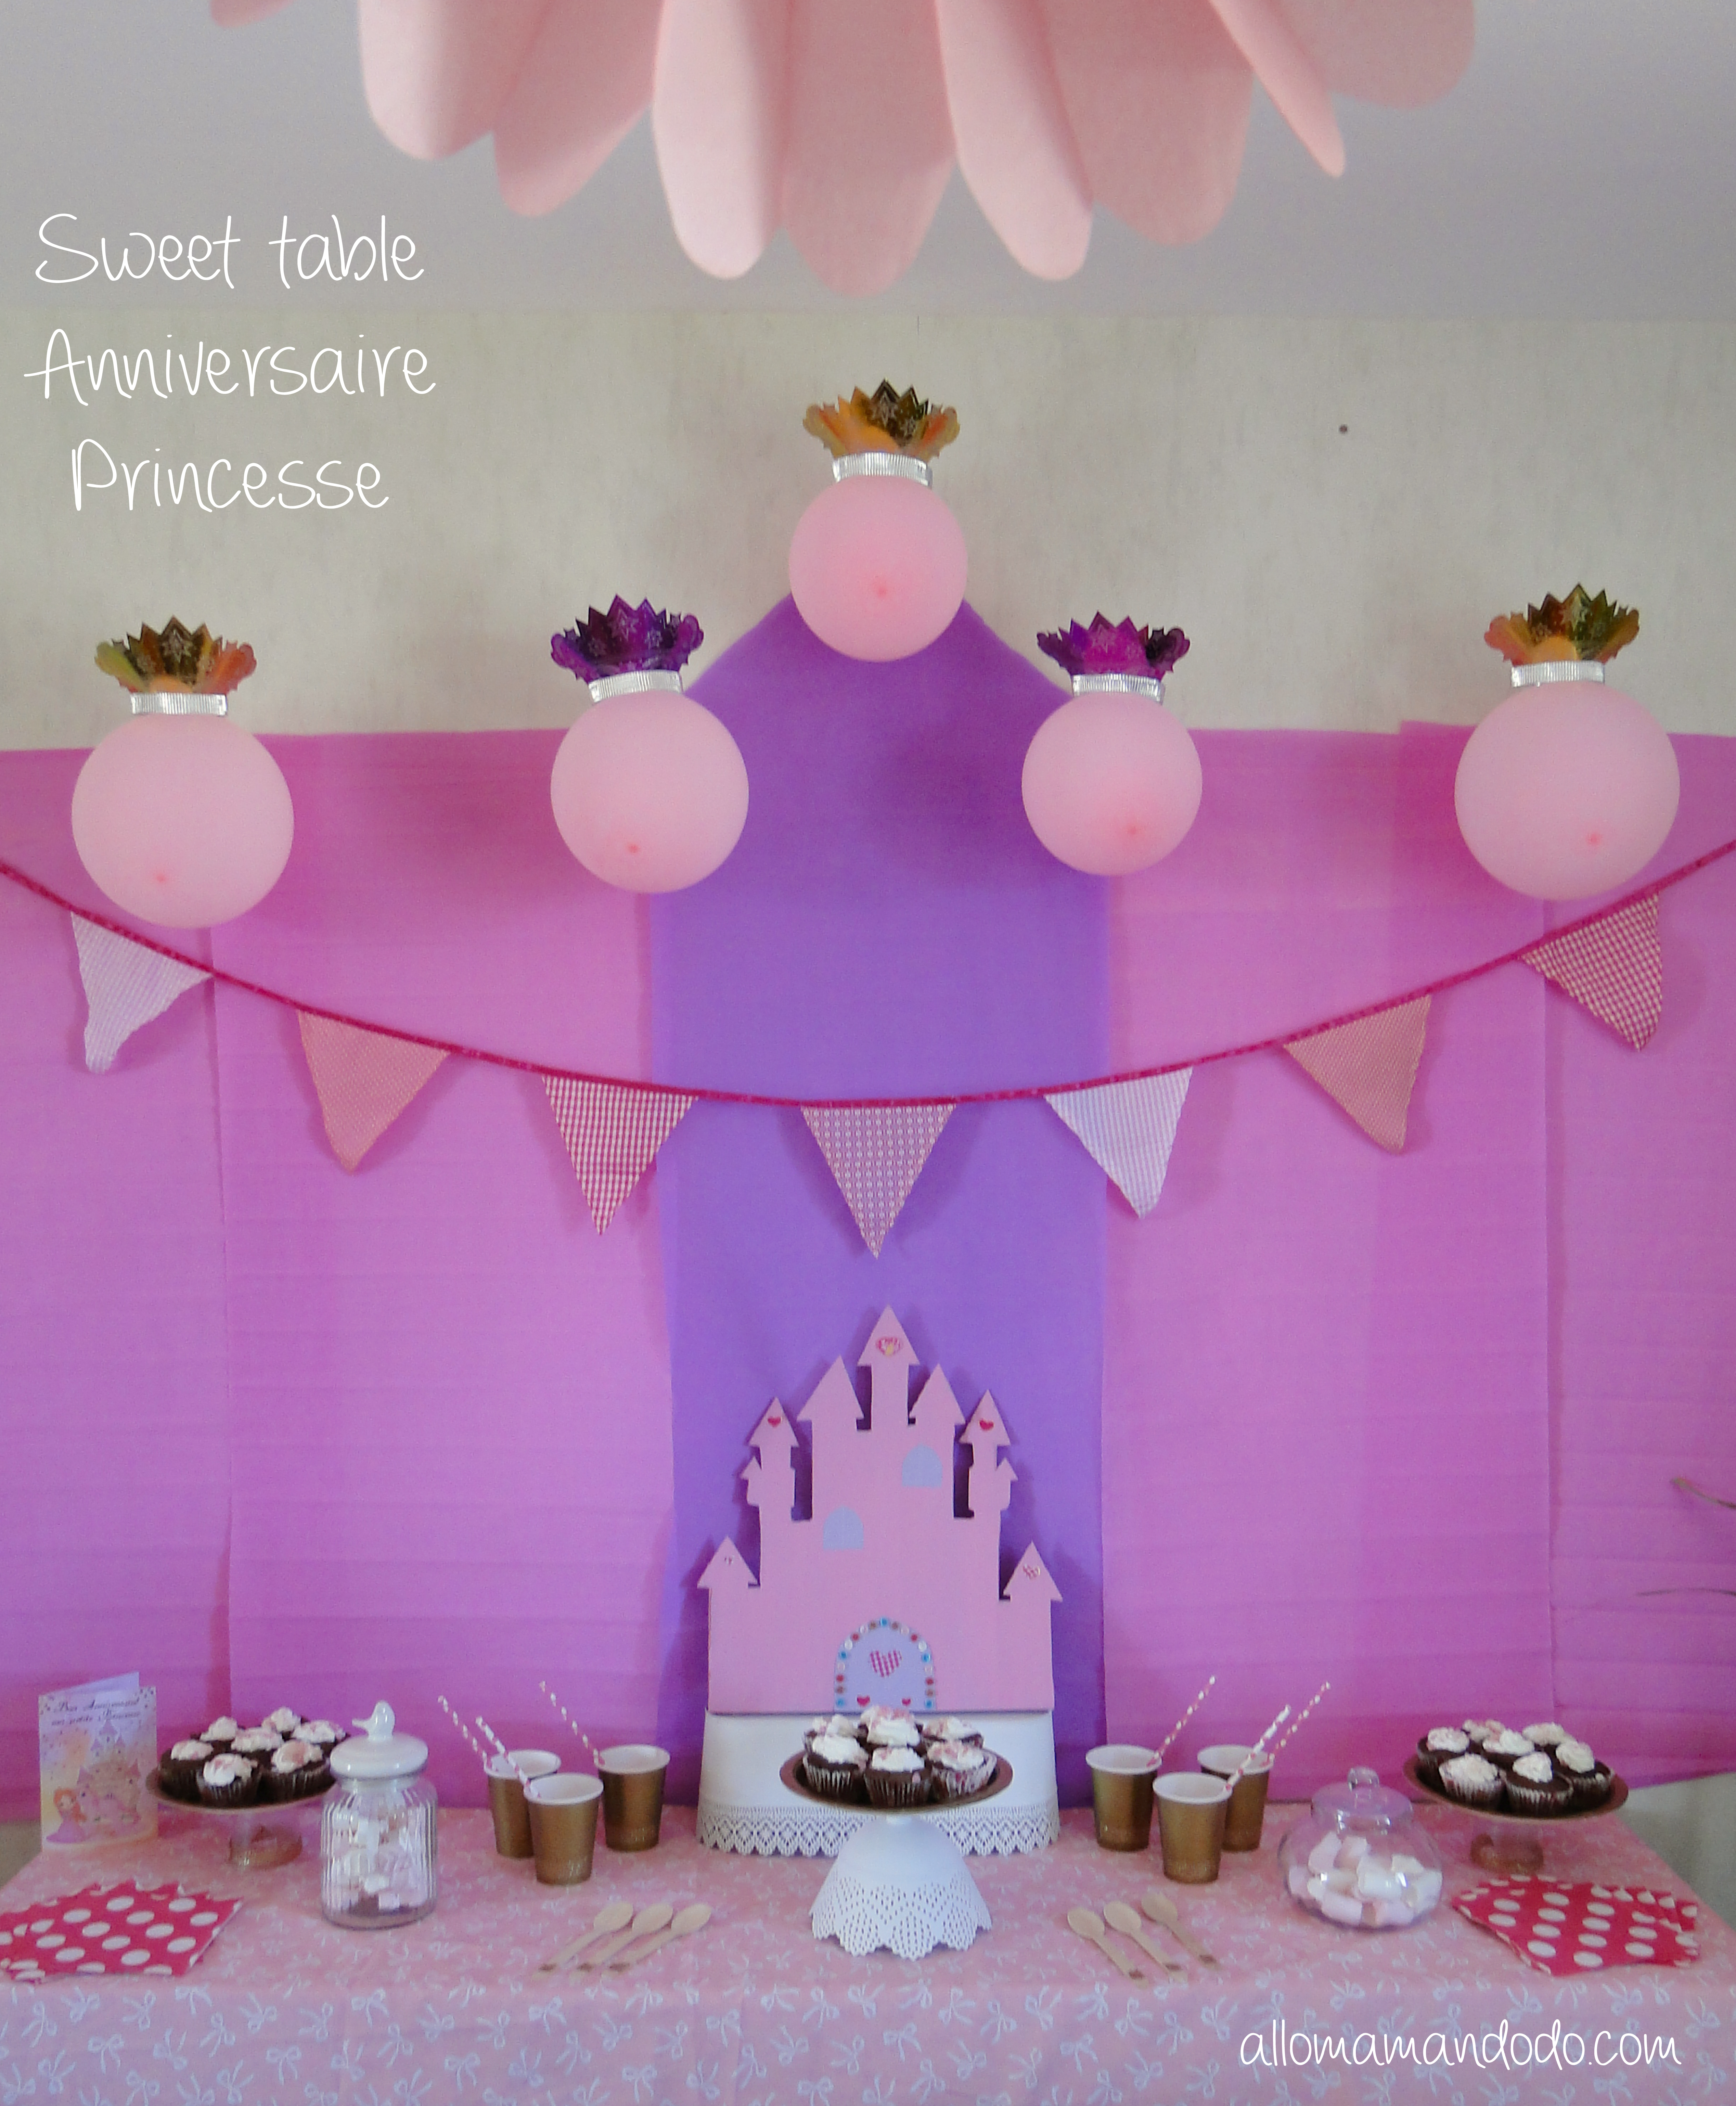 sweet table déco princesse anniversaire